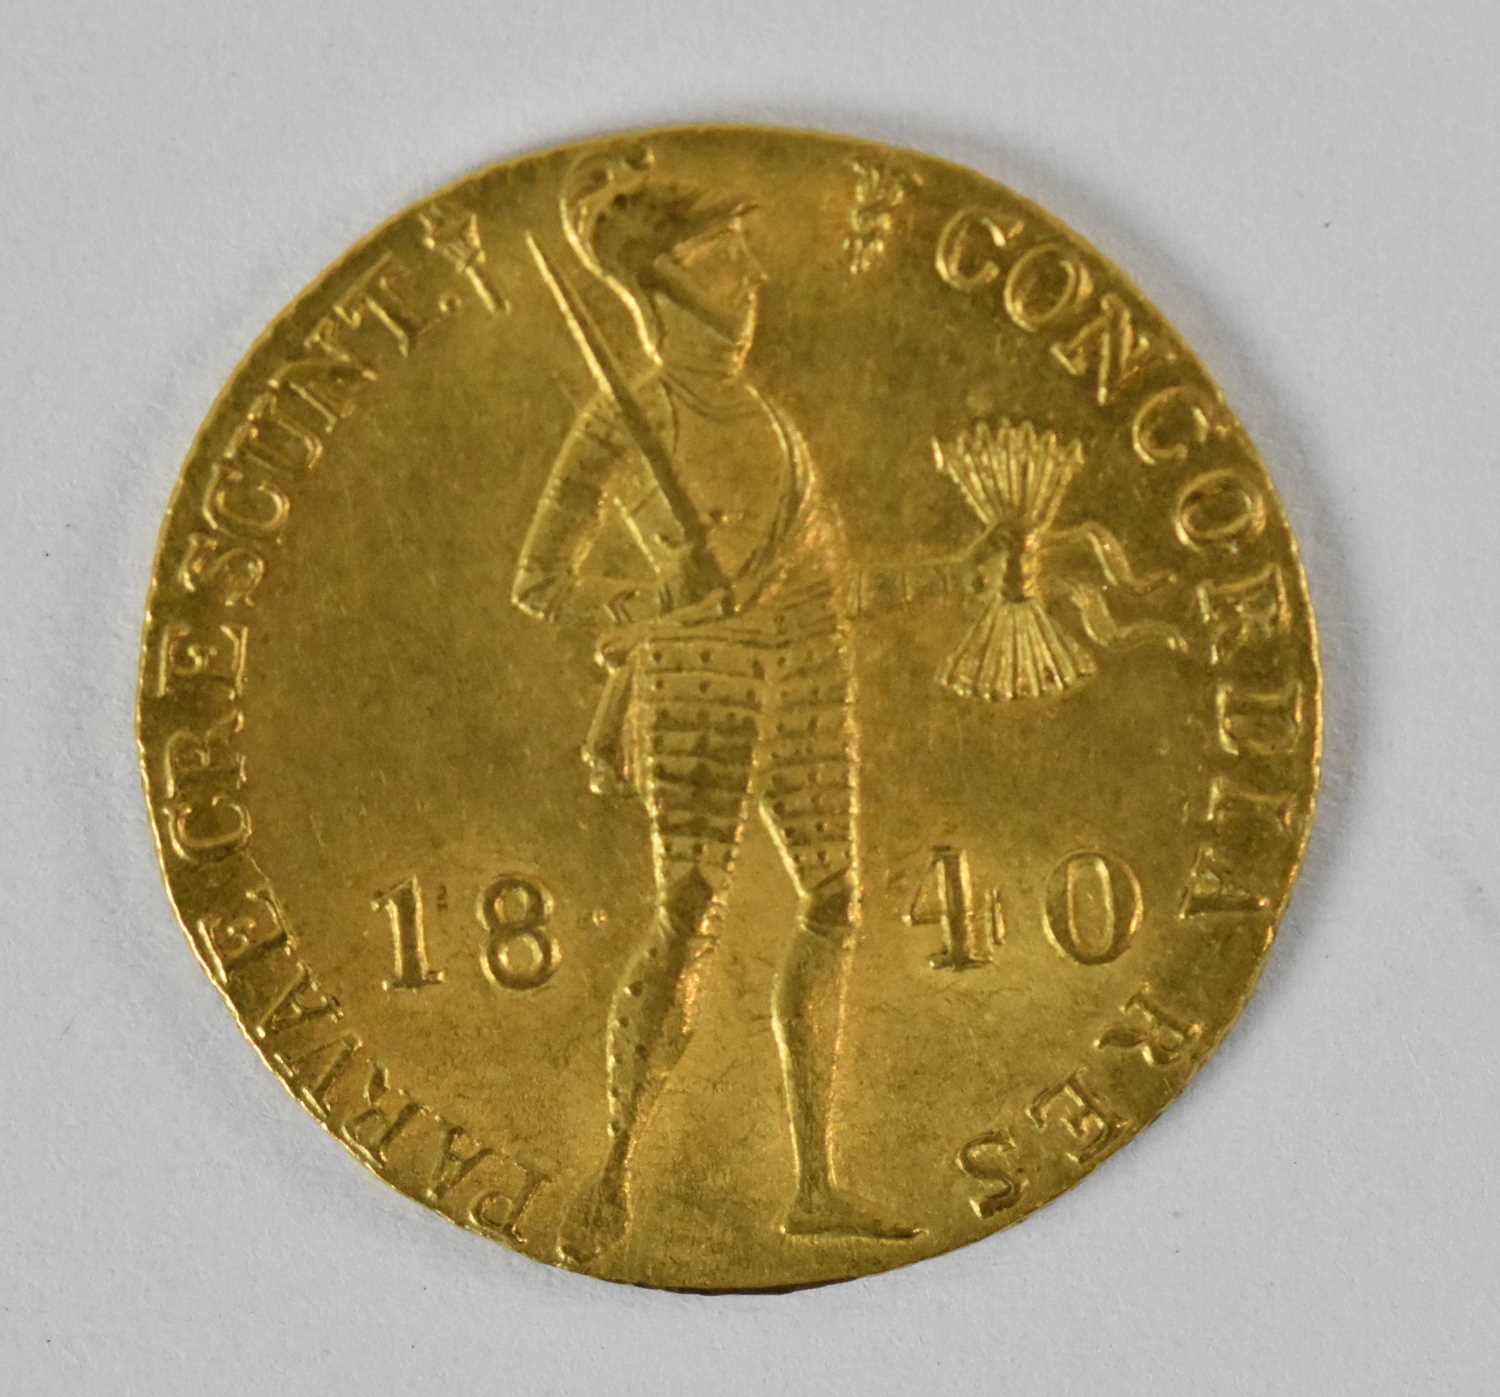 A Dutch one dukat gold coin, 1840, diameter 1.8cm, approx 3.5g.